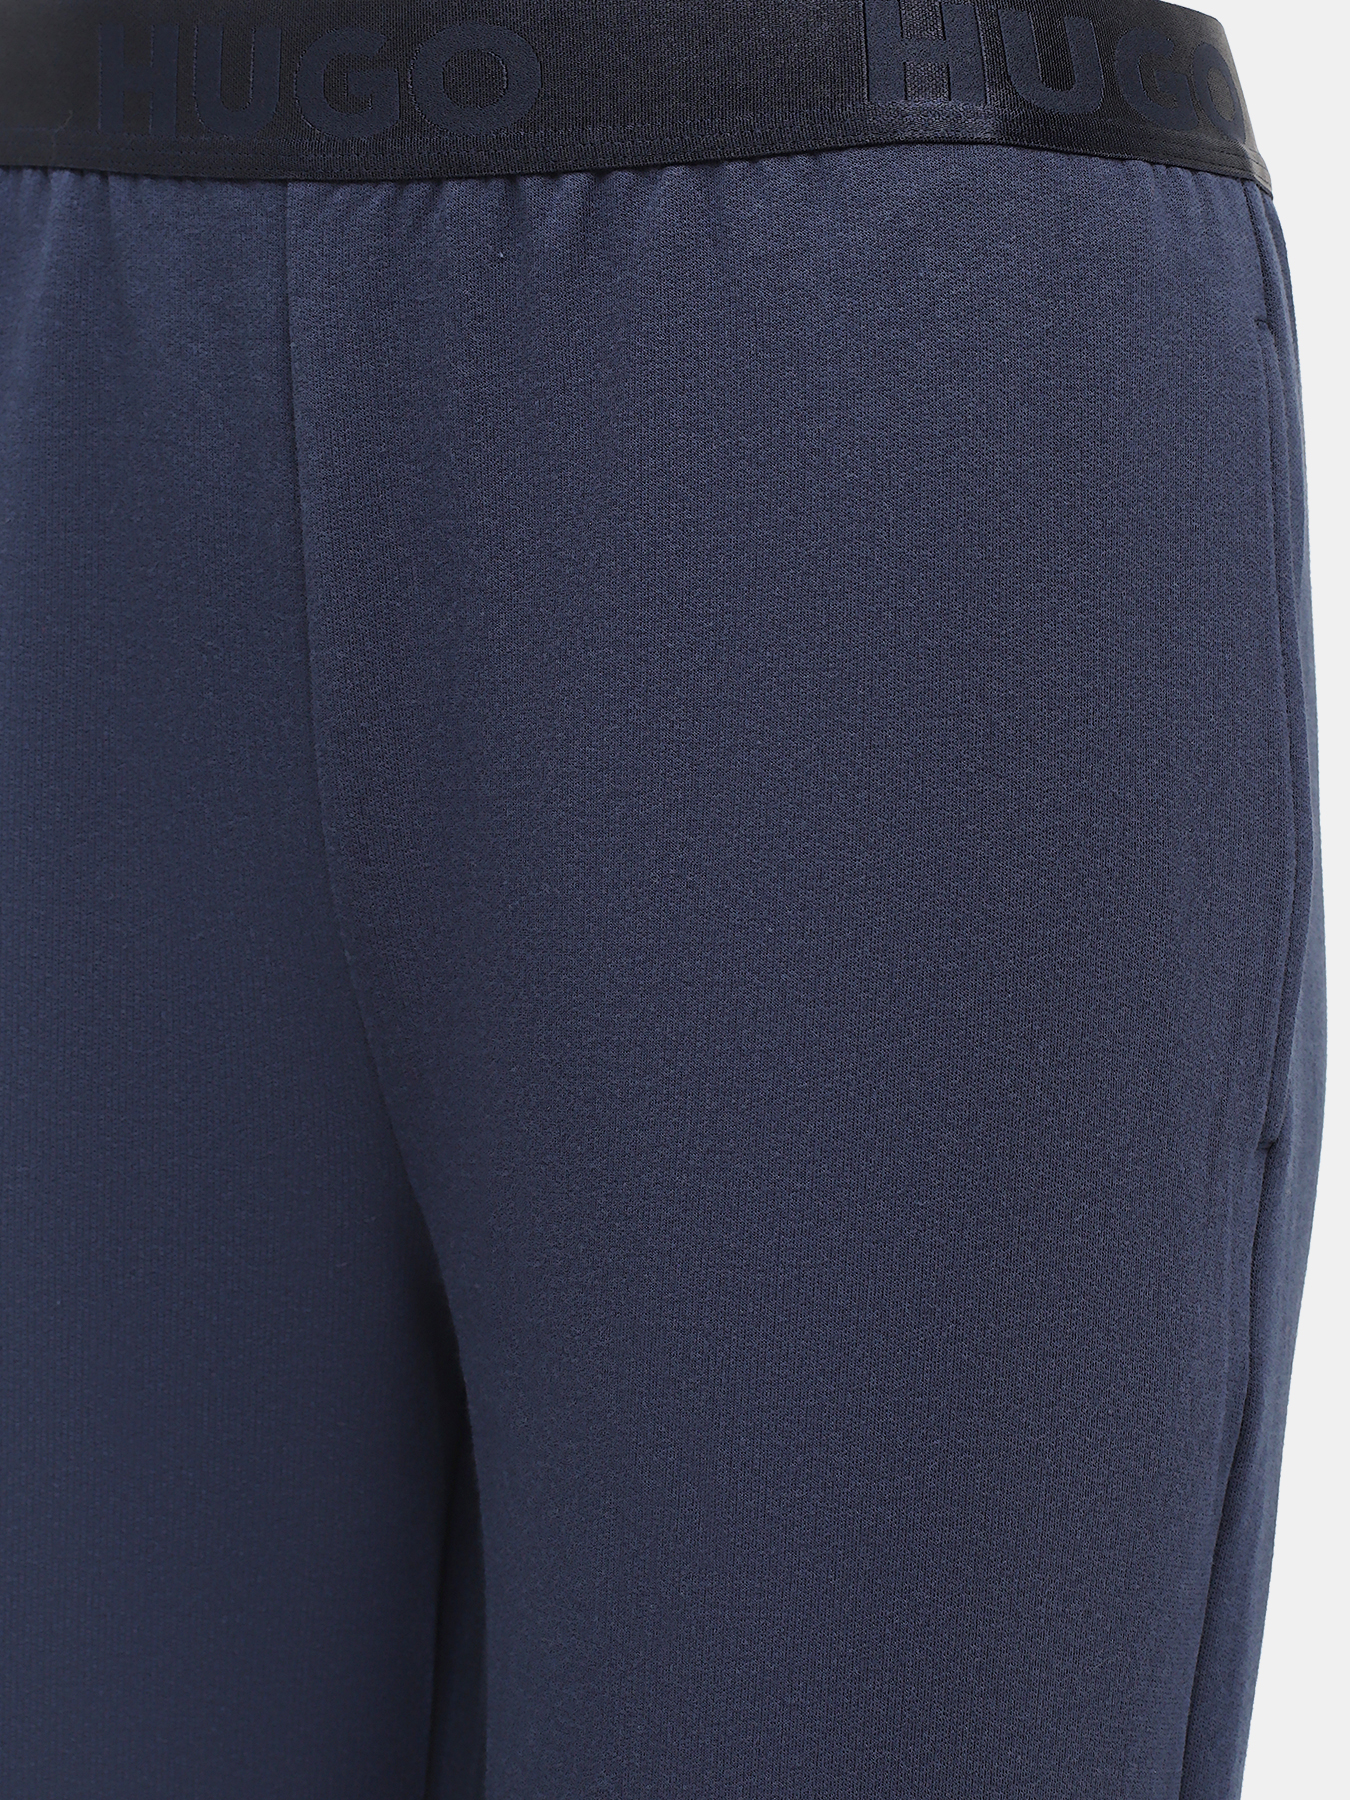 Спортивные брюки Sporty HUGO 427840-041, цвет темно-синий, размер 40-42 - фото 2